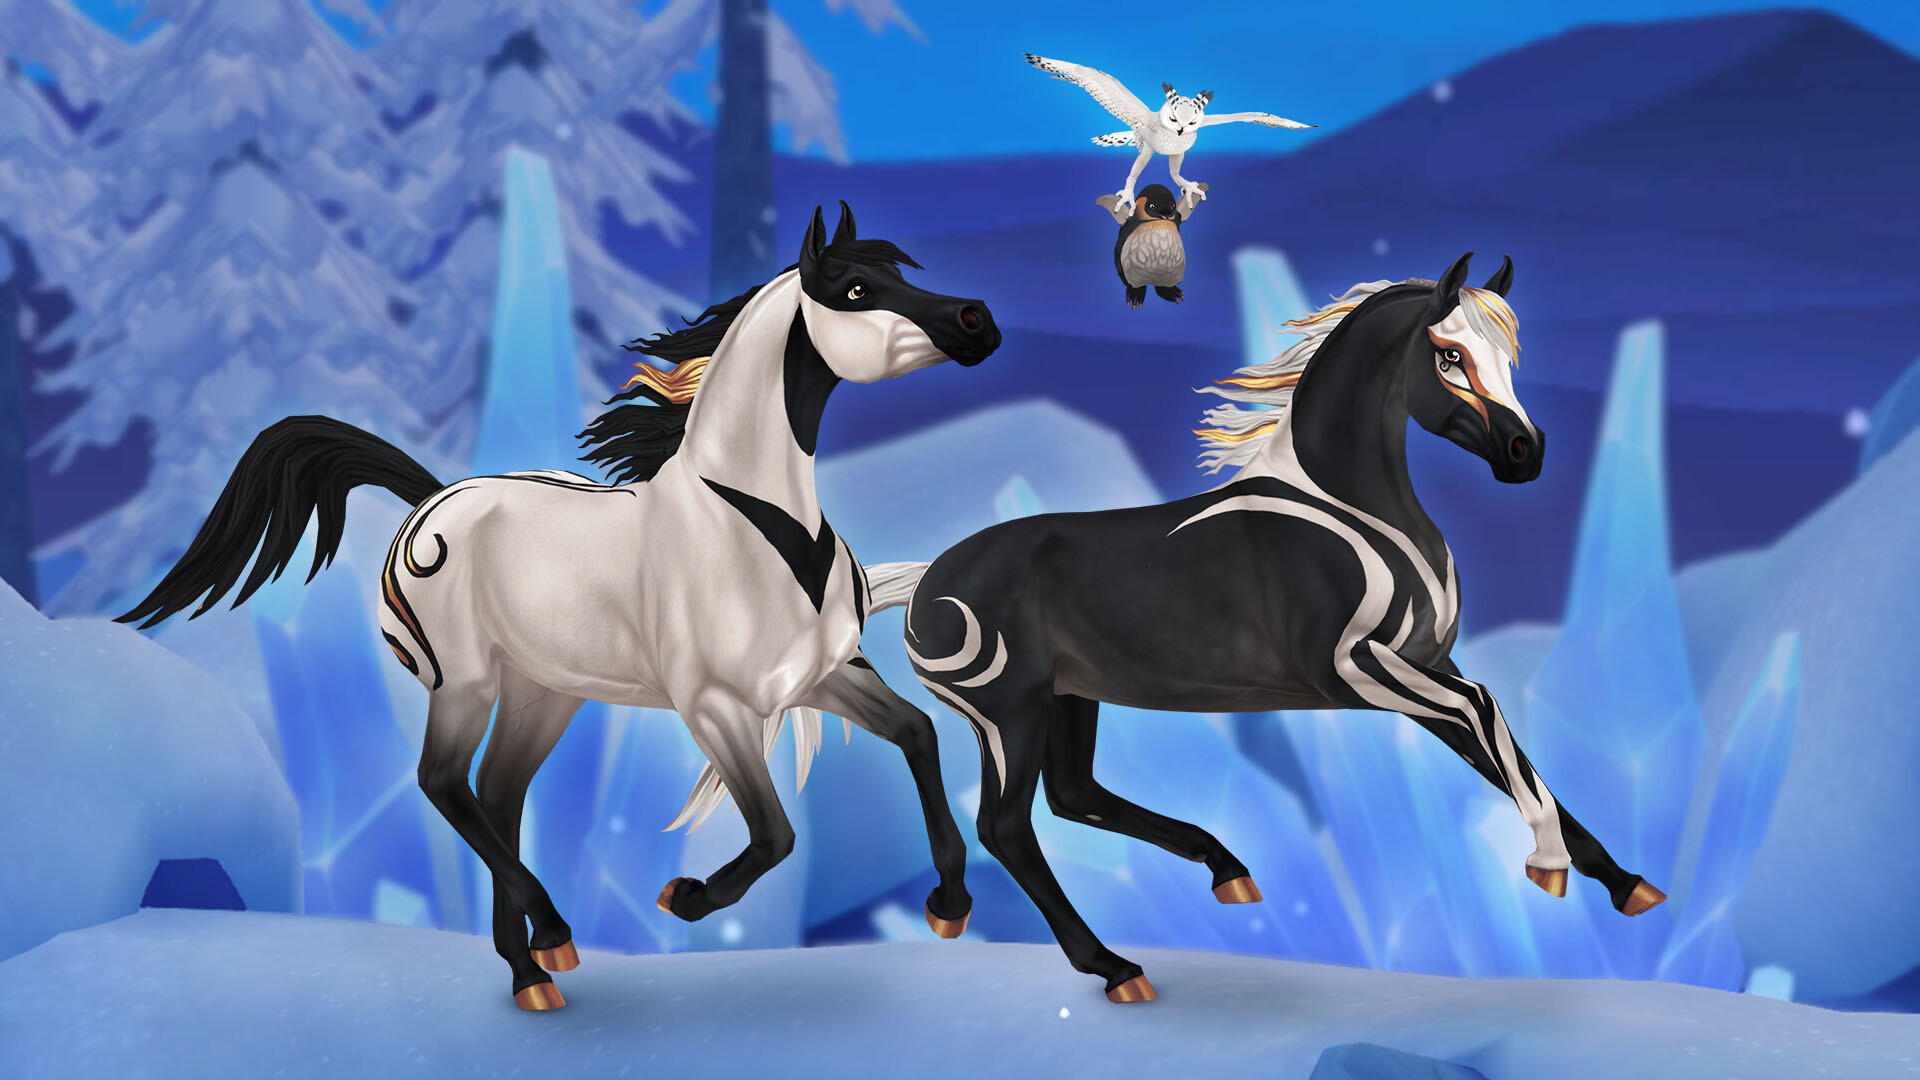 ArtStation - SSO - Magical horses